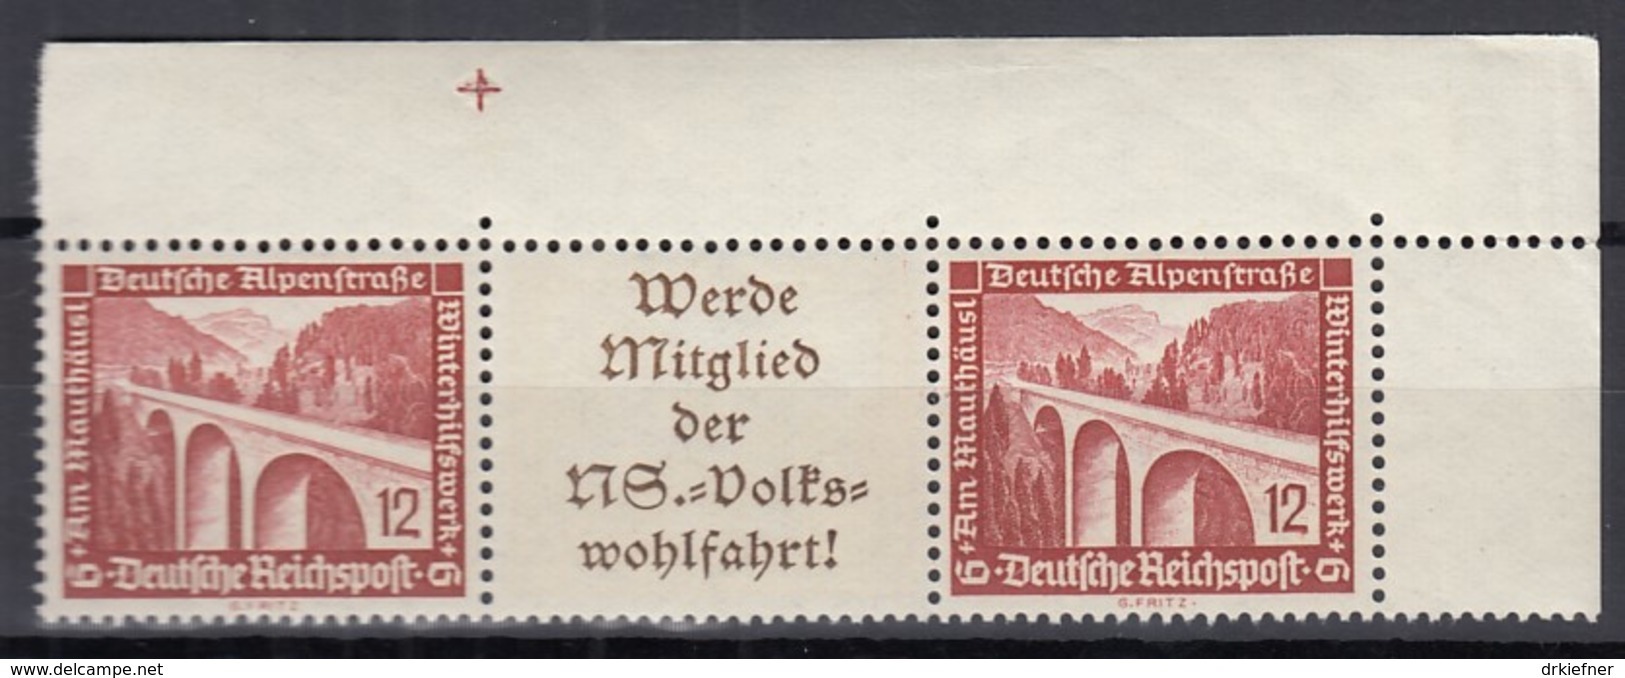 DR W 114, Postfrisch**, Eckrand Mit Passertkreuz, WHW: Moderne Bauten 1936 - Se-Tenant